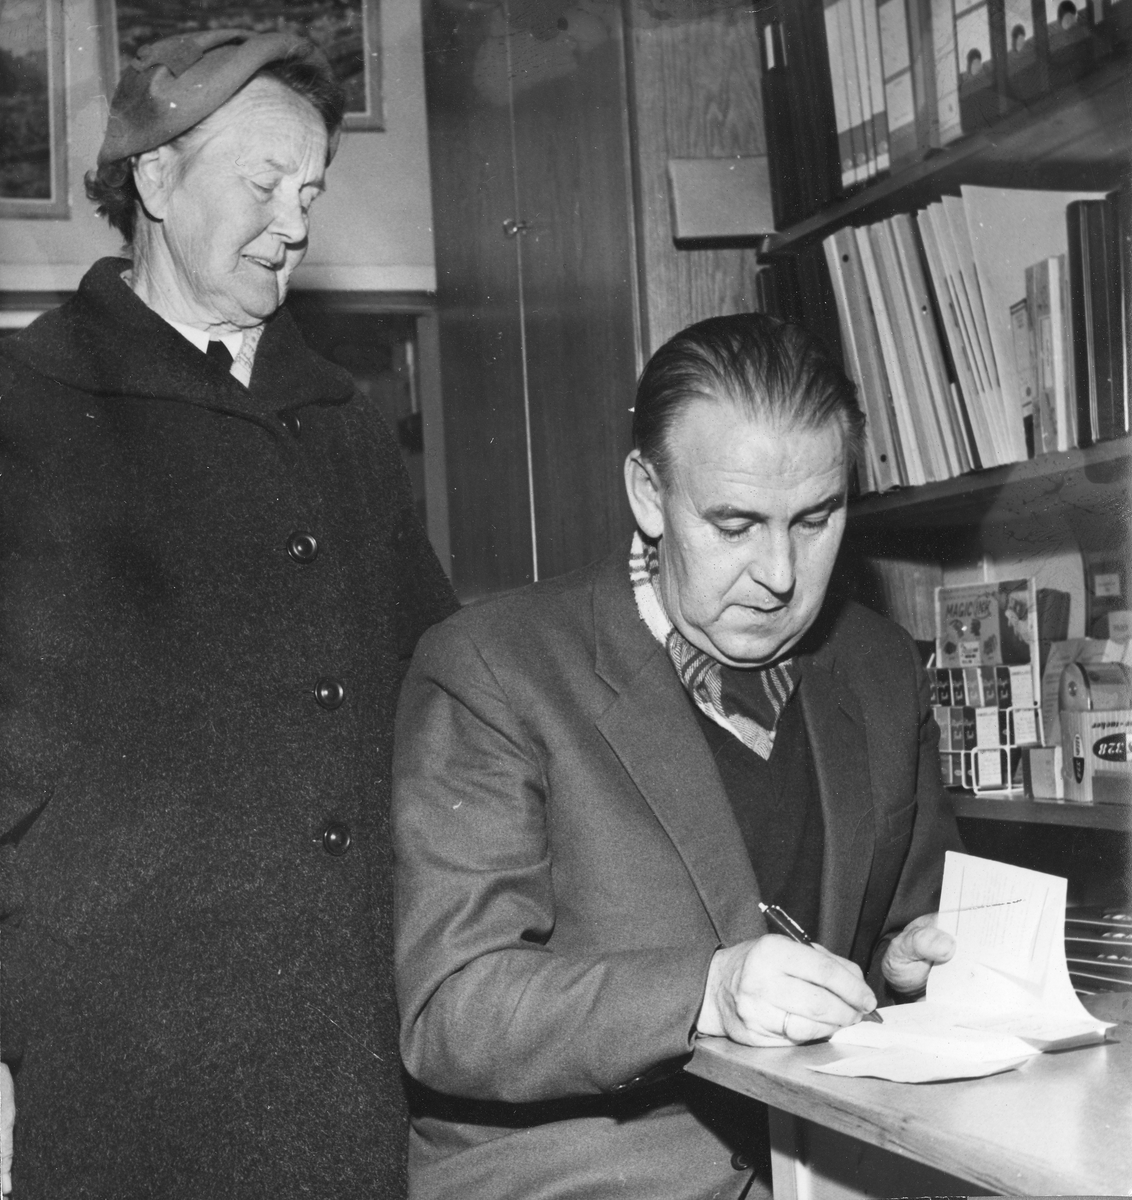 Alf Prøysen signerer bøker hos Gravdahl bokhandel i Hamar. Dame stående bak er ukjent.  (HS 3. NOVEMBER 1959)
Gravdahl bokhandel ble stiftet av Marcus Gravdahl i 1937, og er en av de eldste lokalt eide butikker i Hamar. Gravdahl åpnet sin bokhandel i Granerudgården i Torggata på Hamar, hvor den fortsatt har sine lokaler. Her jobbet dikteren Rolf Jacobsen en periode på 50-tallet.